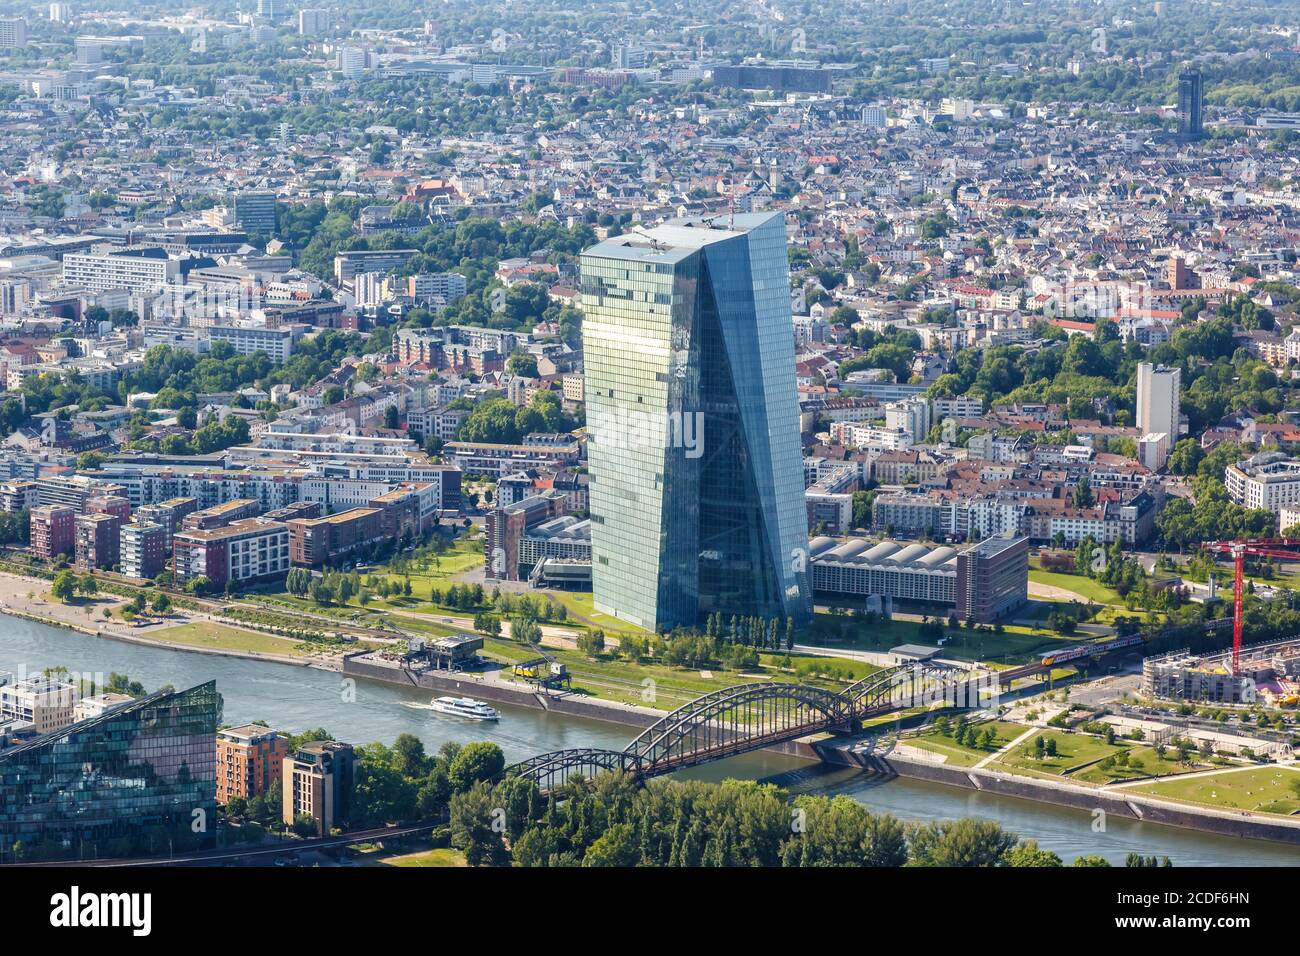 Frankfurt, Deutschland - 27. Mai 2020: EZB European Central Bank Wolkenkratzer Skyline Luftbild Main Flussstadt in Deutschland. Stockfoto